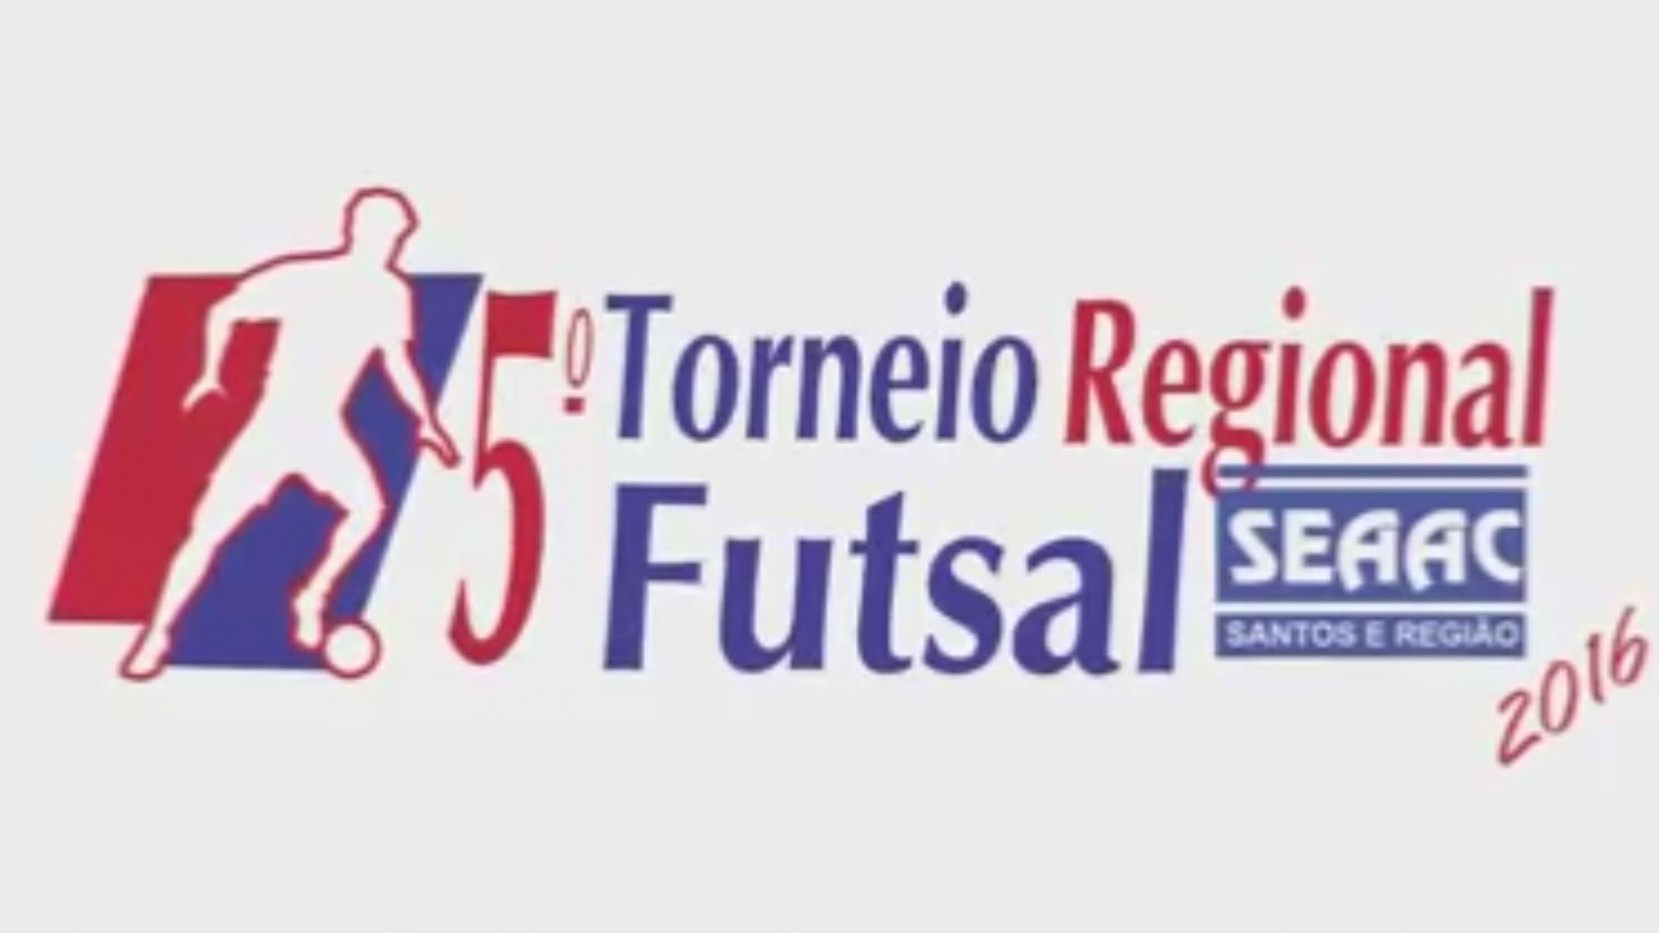 5º Torneio Regional de Futsal SEAAC Santos e Região